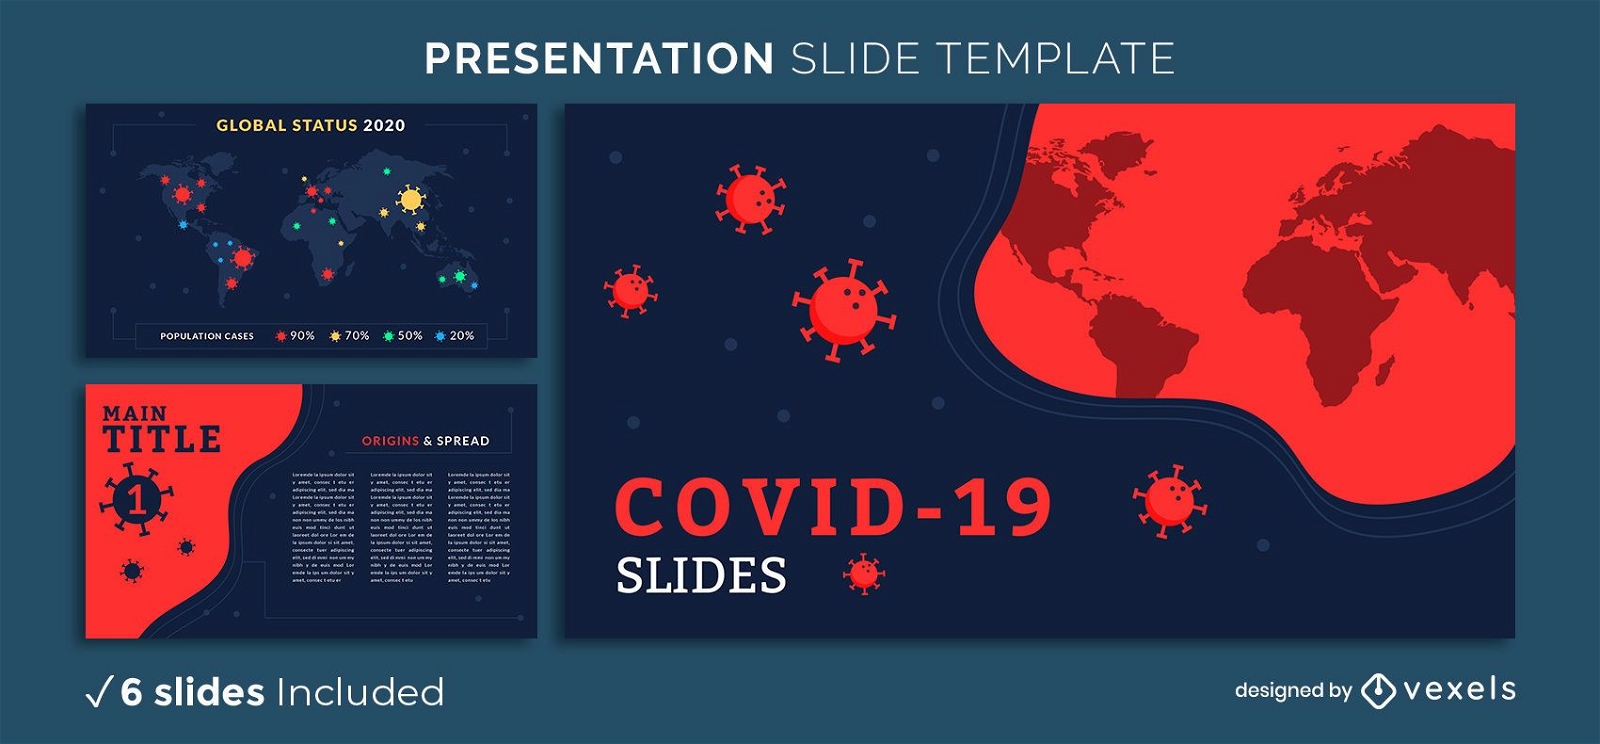 Covid-19 Presentation Template